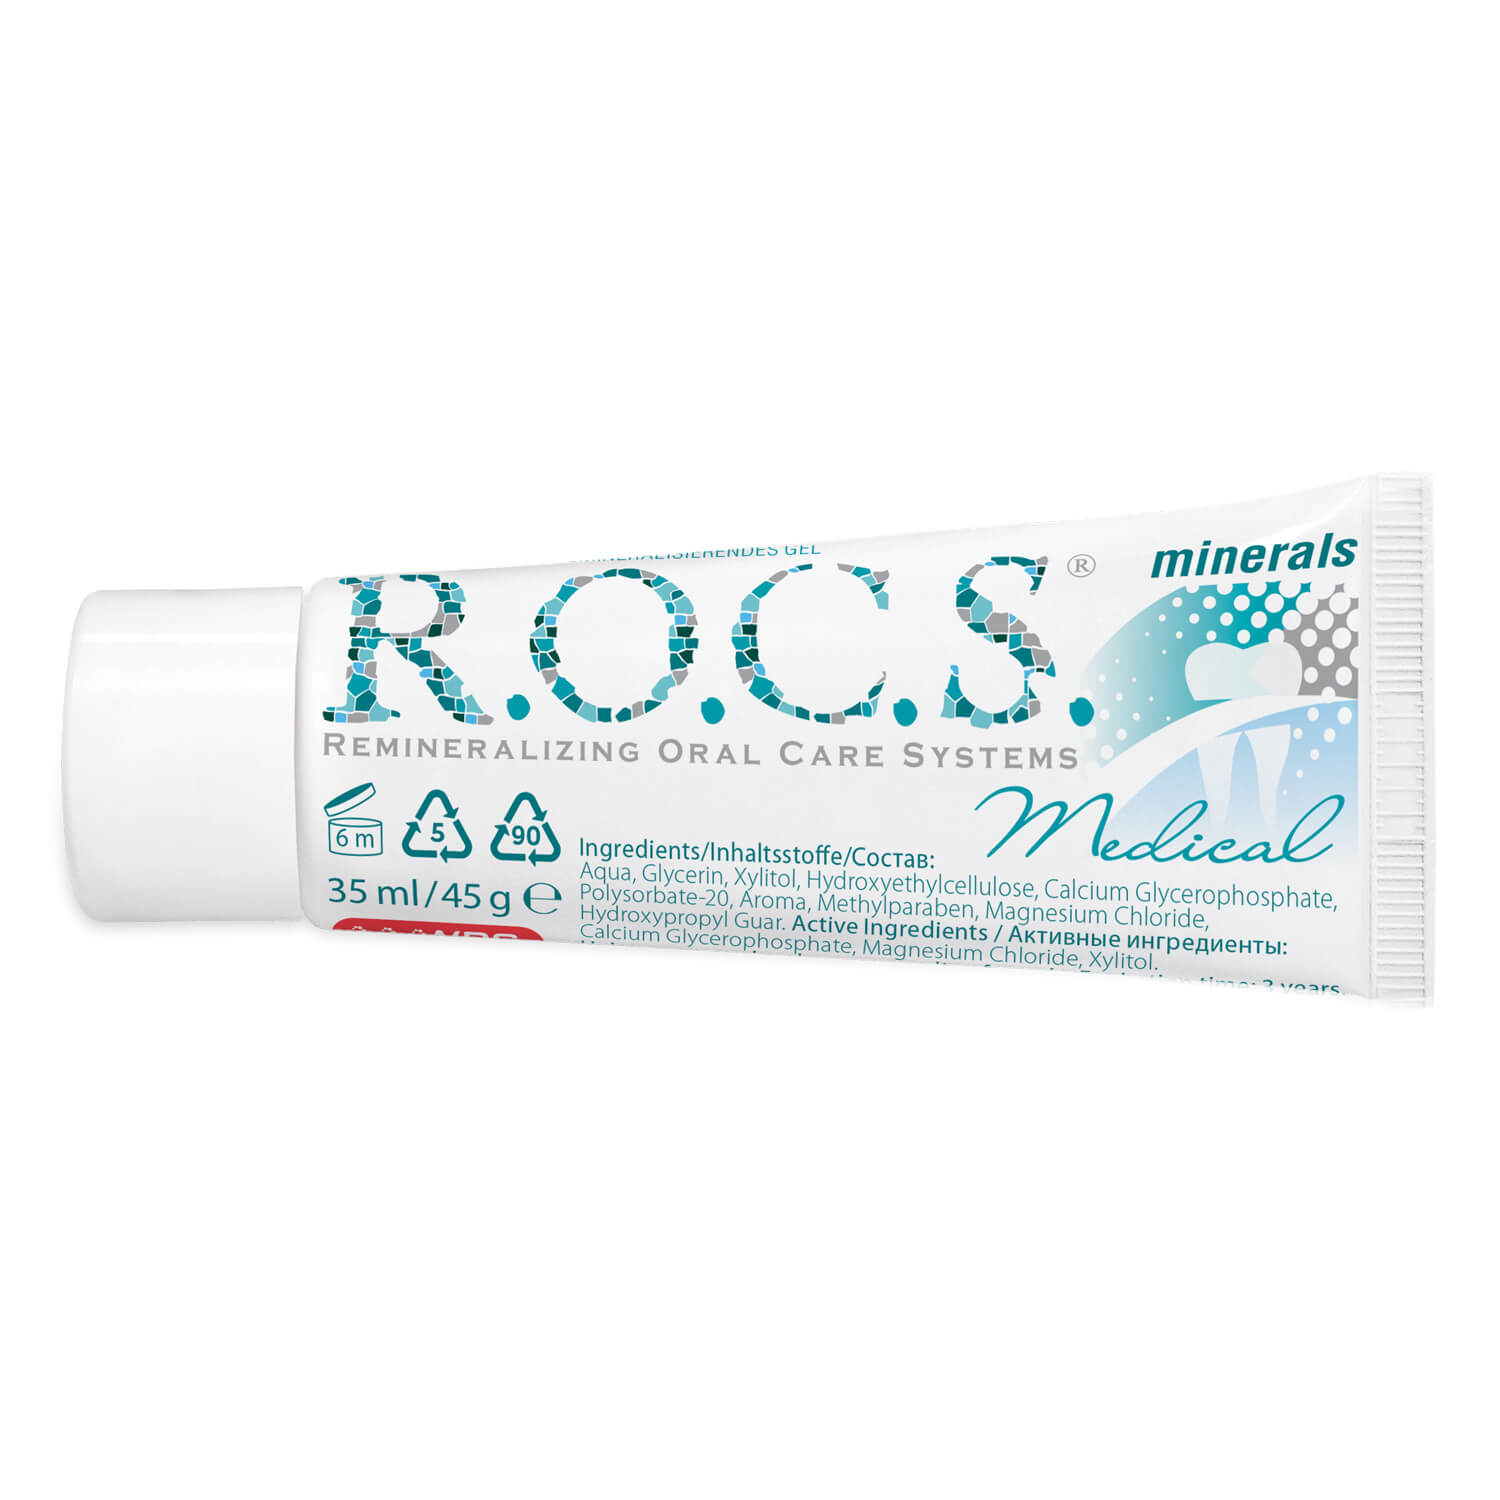 Рокс минералс гель купить. Рокс минерал Медикал гель. R.O.C.S. Medical гель реминерализующий. Rocs Medical Minerals гель реминерализирующий. Зубная паста Rocs Medical Minerals.